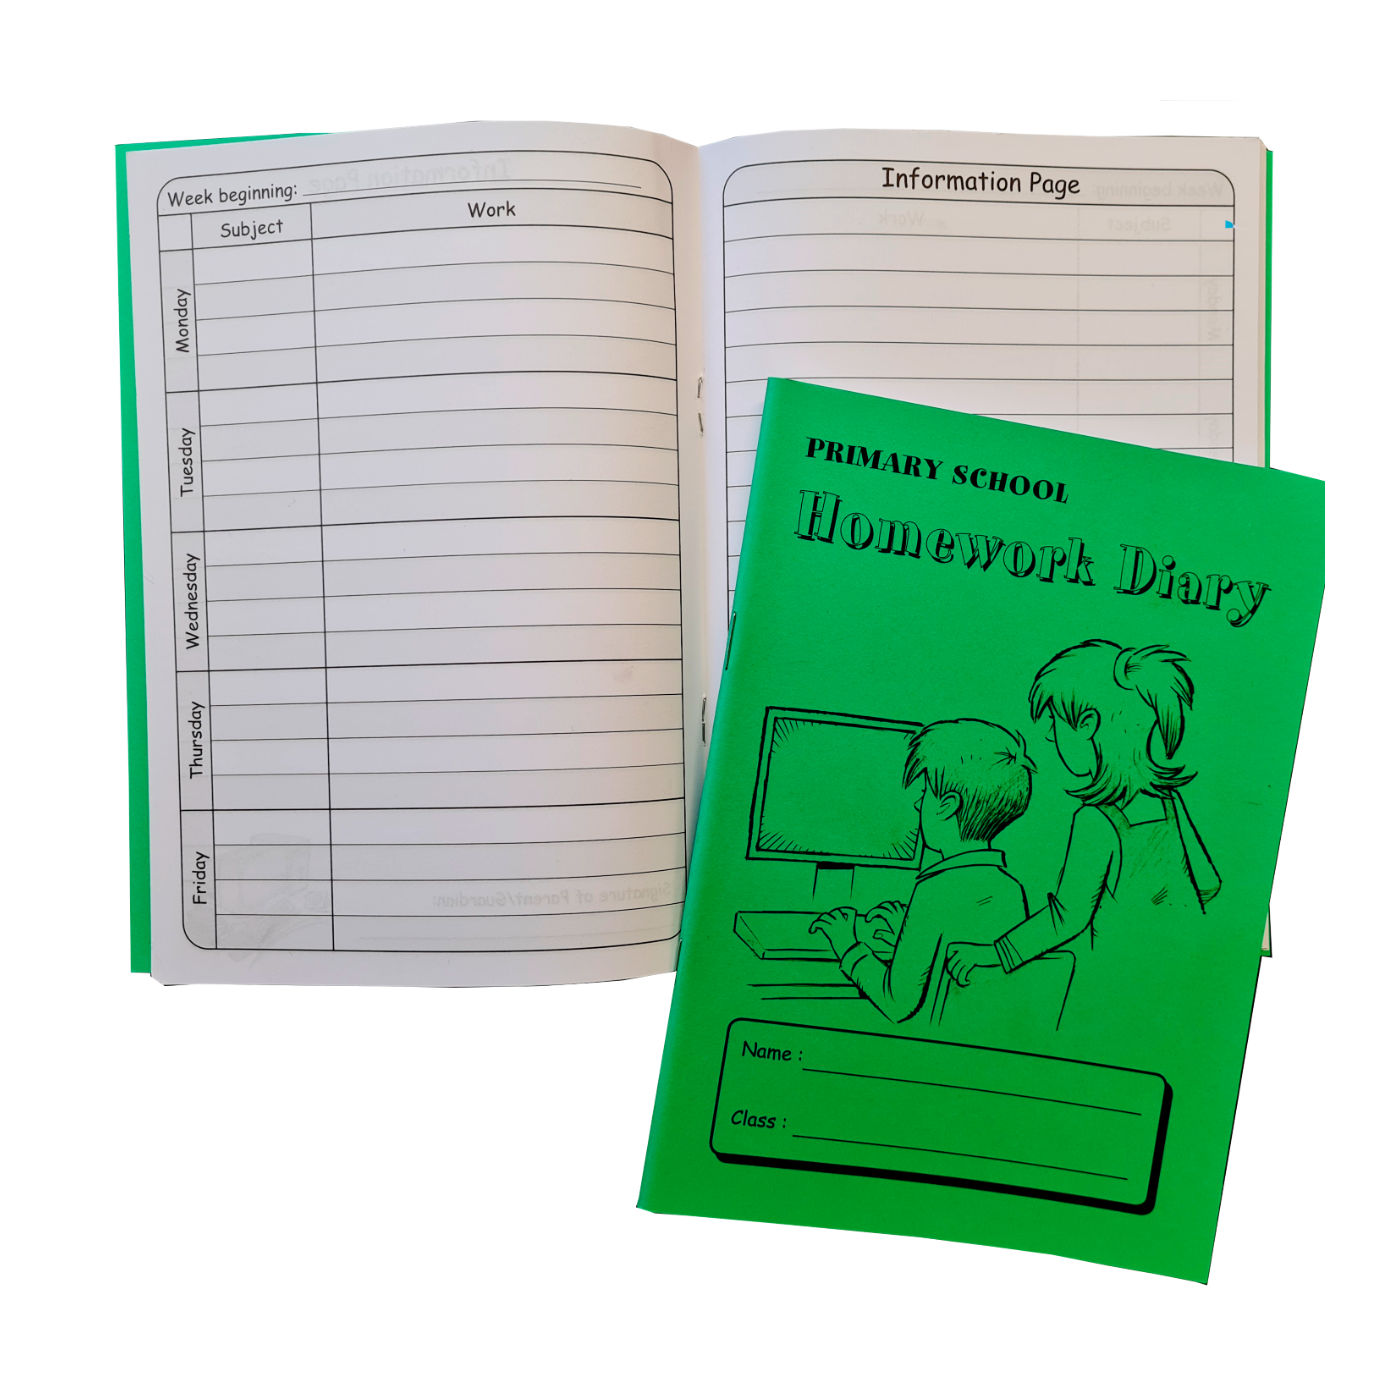 homework diary primary school